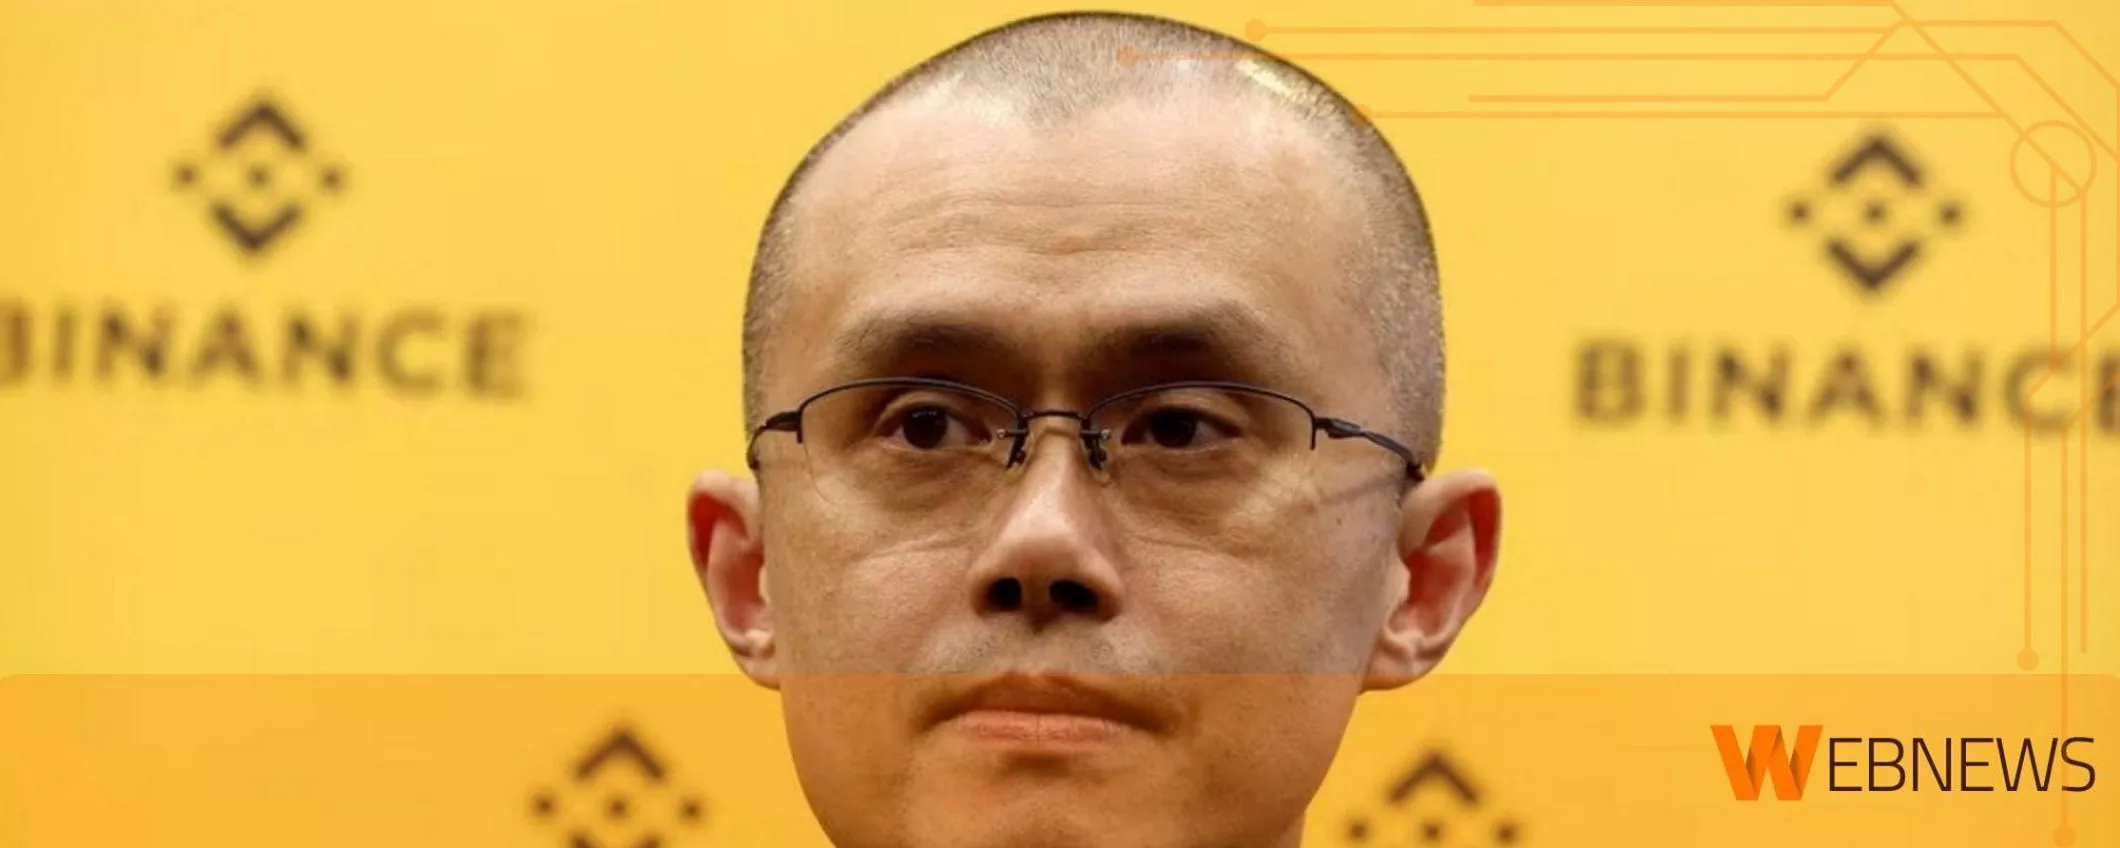 L'ex CEO di Binance Changpeng Zhao condannato a 4 mesi di carcere